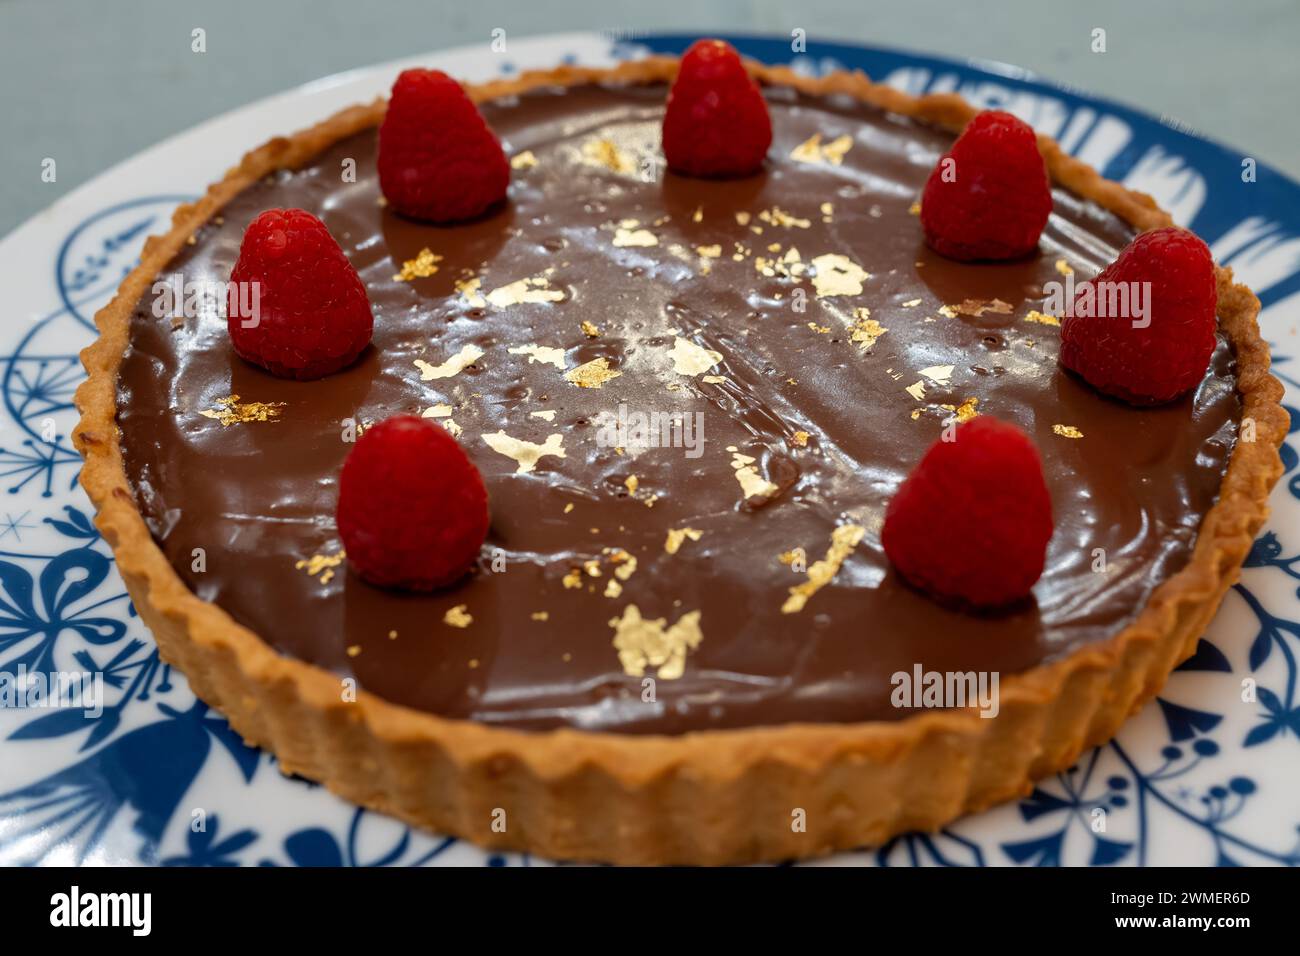 Torta al cioccolato con marmellata di albicocche decorata con lamponi freschi e targhe d'oro 24 carati su lavagna bianca blu Foto Stock